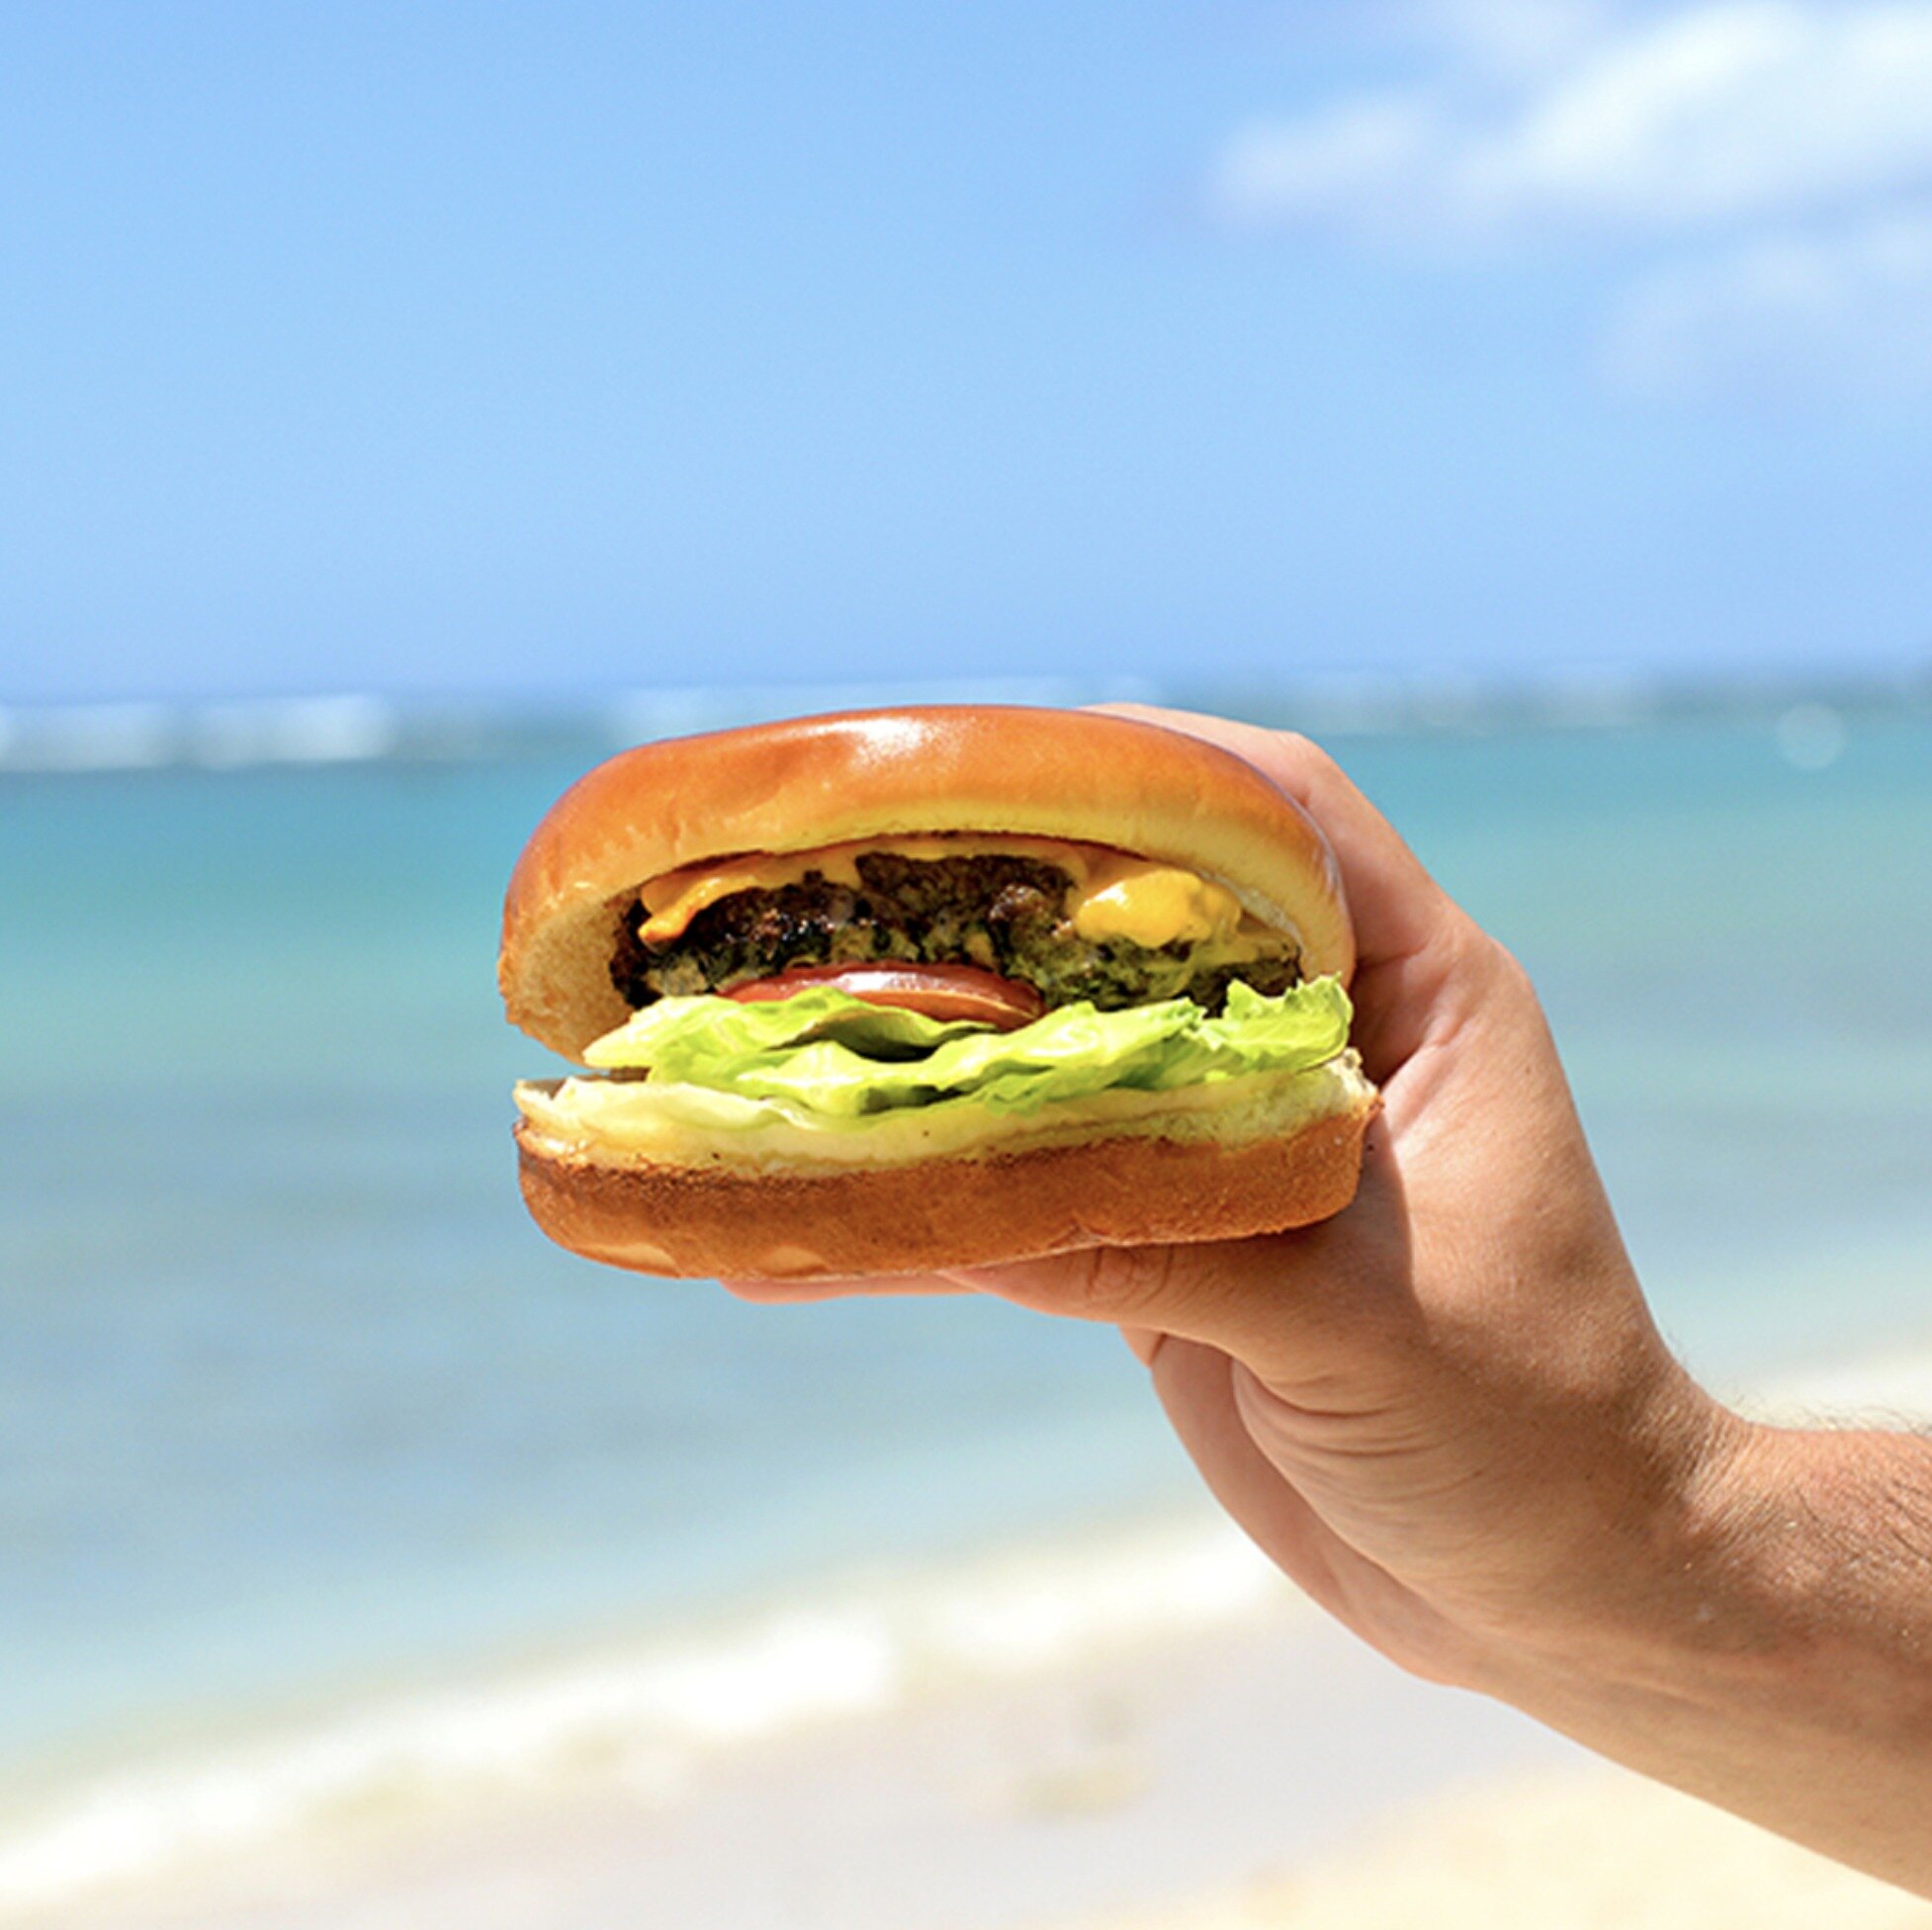 アラモアナ店内のプレートランチ屋『HISteaks』のハンバーガーは、お肉のおいしさにこだわったパテと特製ソースの組み合わせがたまらない😋🍔🤤

アラモアナビーチパークに行く前に立ち寄ってピクニックのお供にしてね😆
.⁠
.⁠
\次のハワイ旅行まで忘れないように保存しよう/⁠
@foodlandalamoanajp⁠
.⁠
.⁠
#ハワイ大好き #ハワイグルメ #妄想ハワイ #美味しいハワイ #ハワイ好きな人と繋がりたい #ハワイ好きと繋がりたい #ハワイ好きママ #ハワイ好き #ハワイ